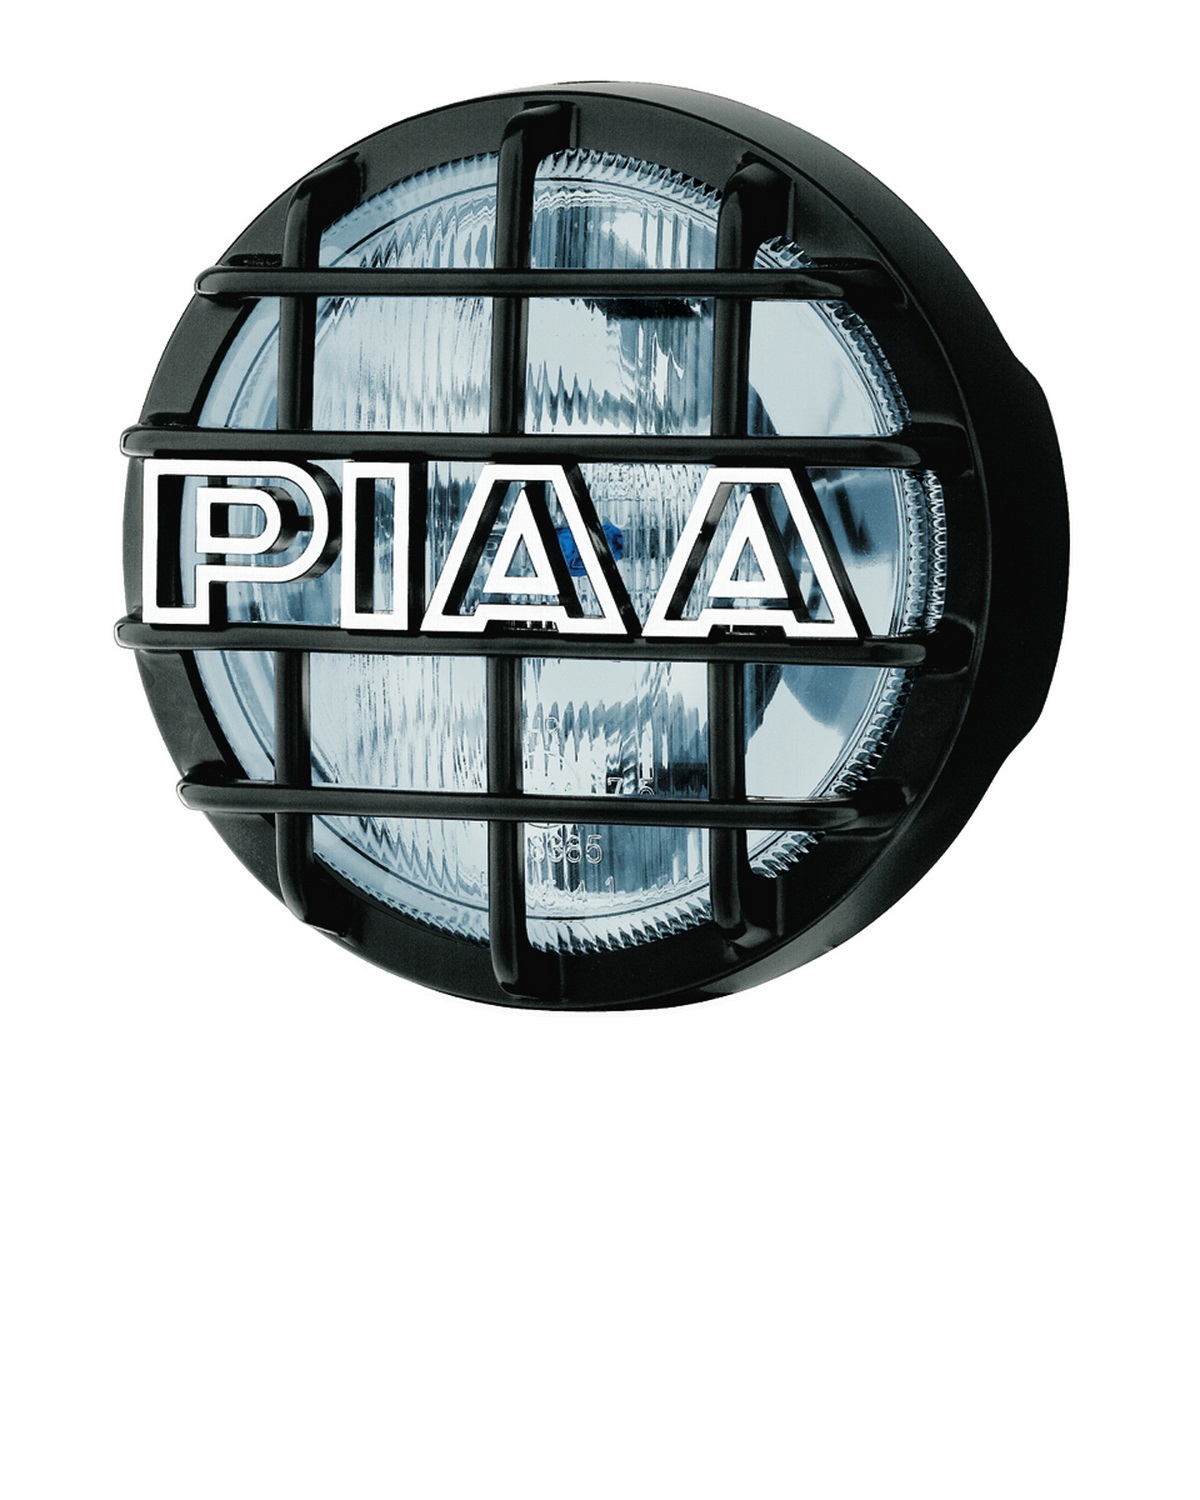 PIAA PIAA 5454 540 Xtreme White Driving Lamp Kit 05-10 Tacoma